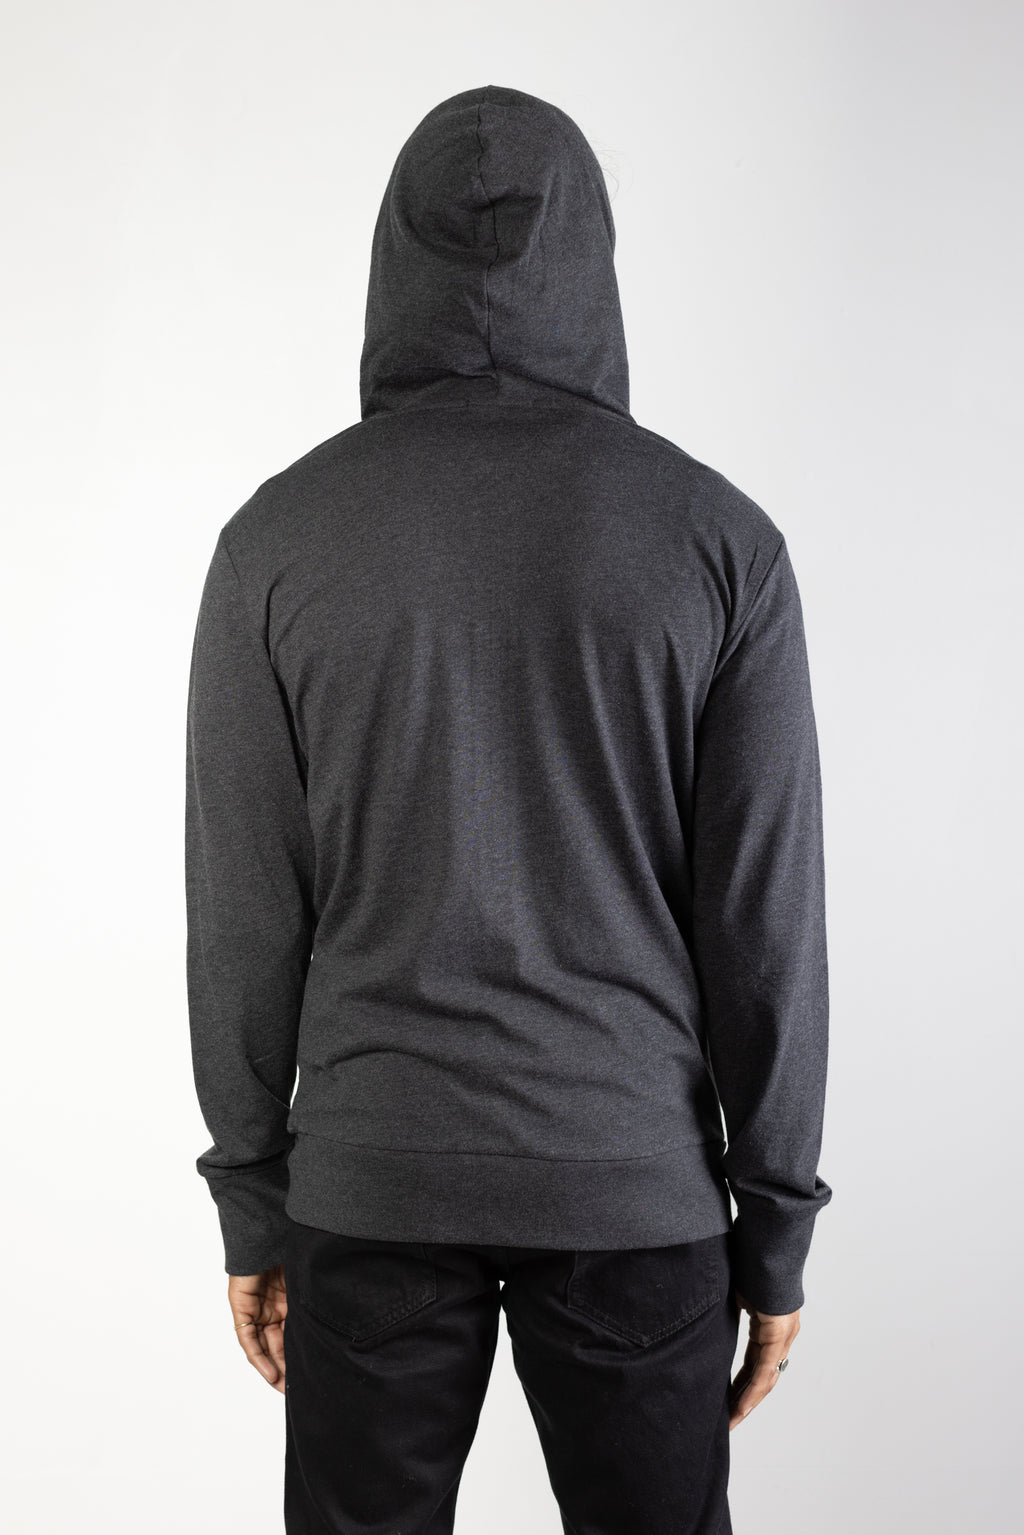 Tri-blend zip hoodie in Charcoal 03